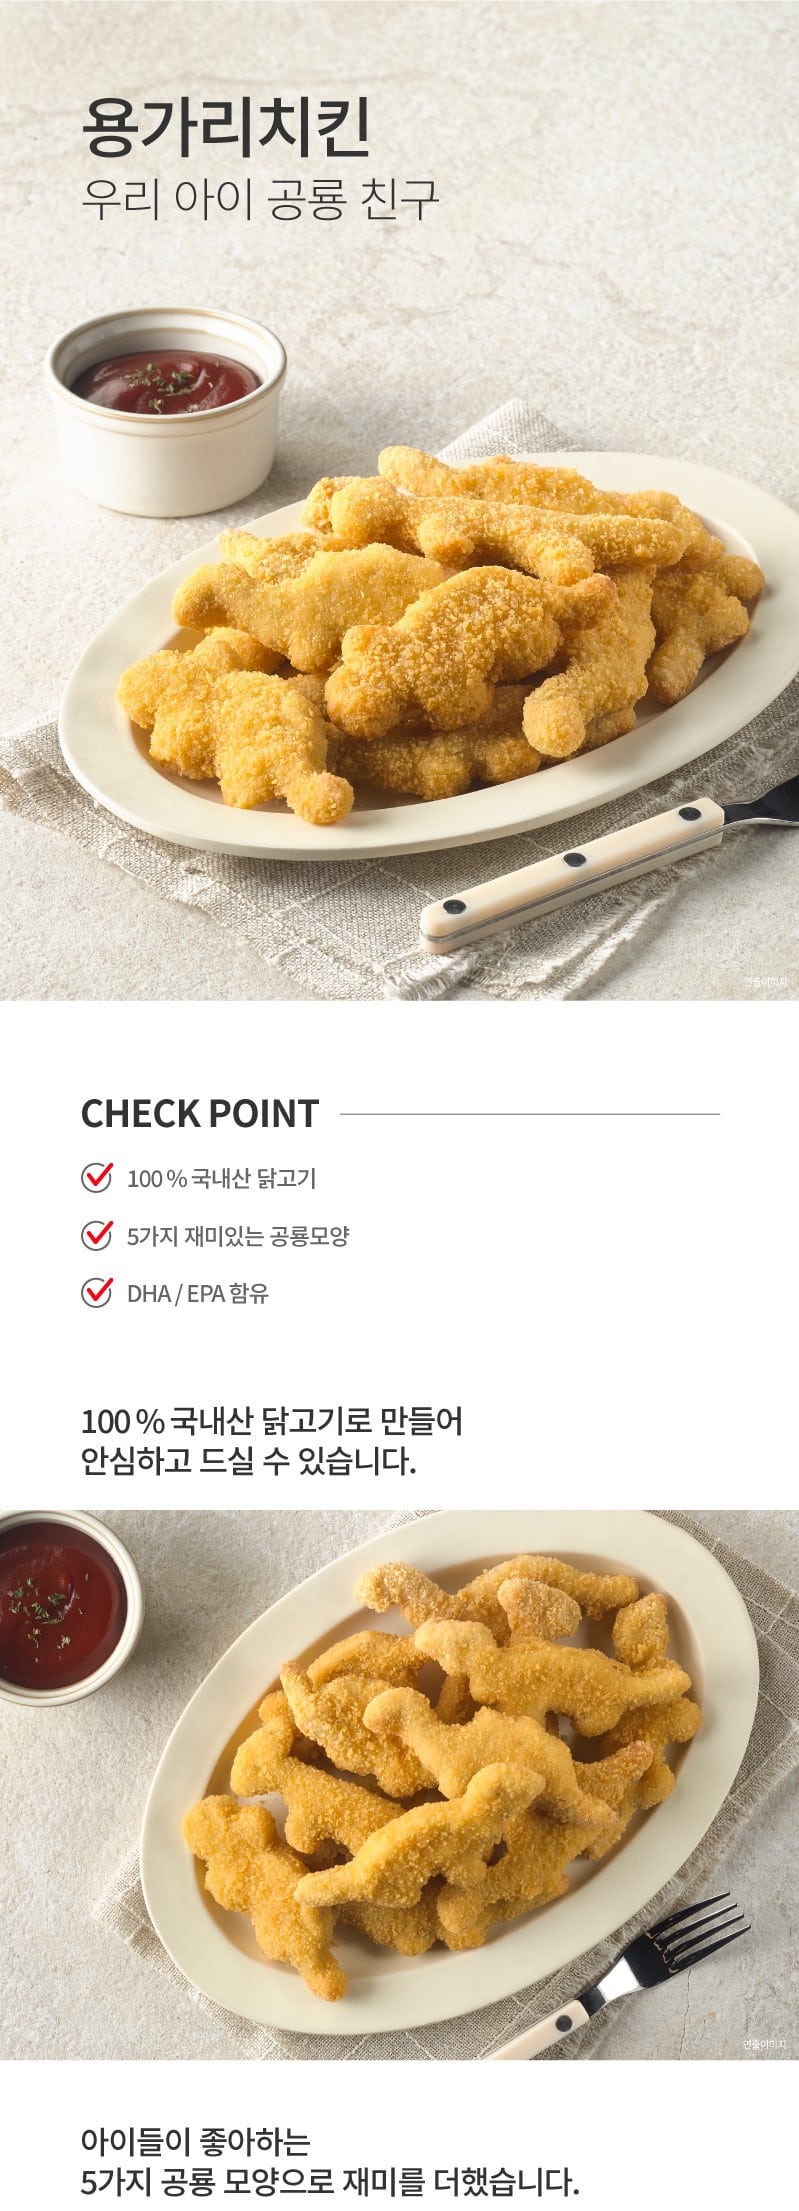 韓國食品-[하림] 용가리치킨 1kg